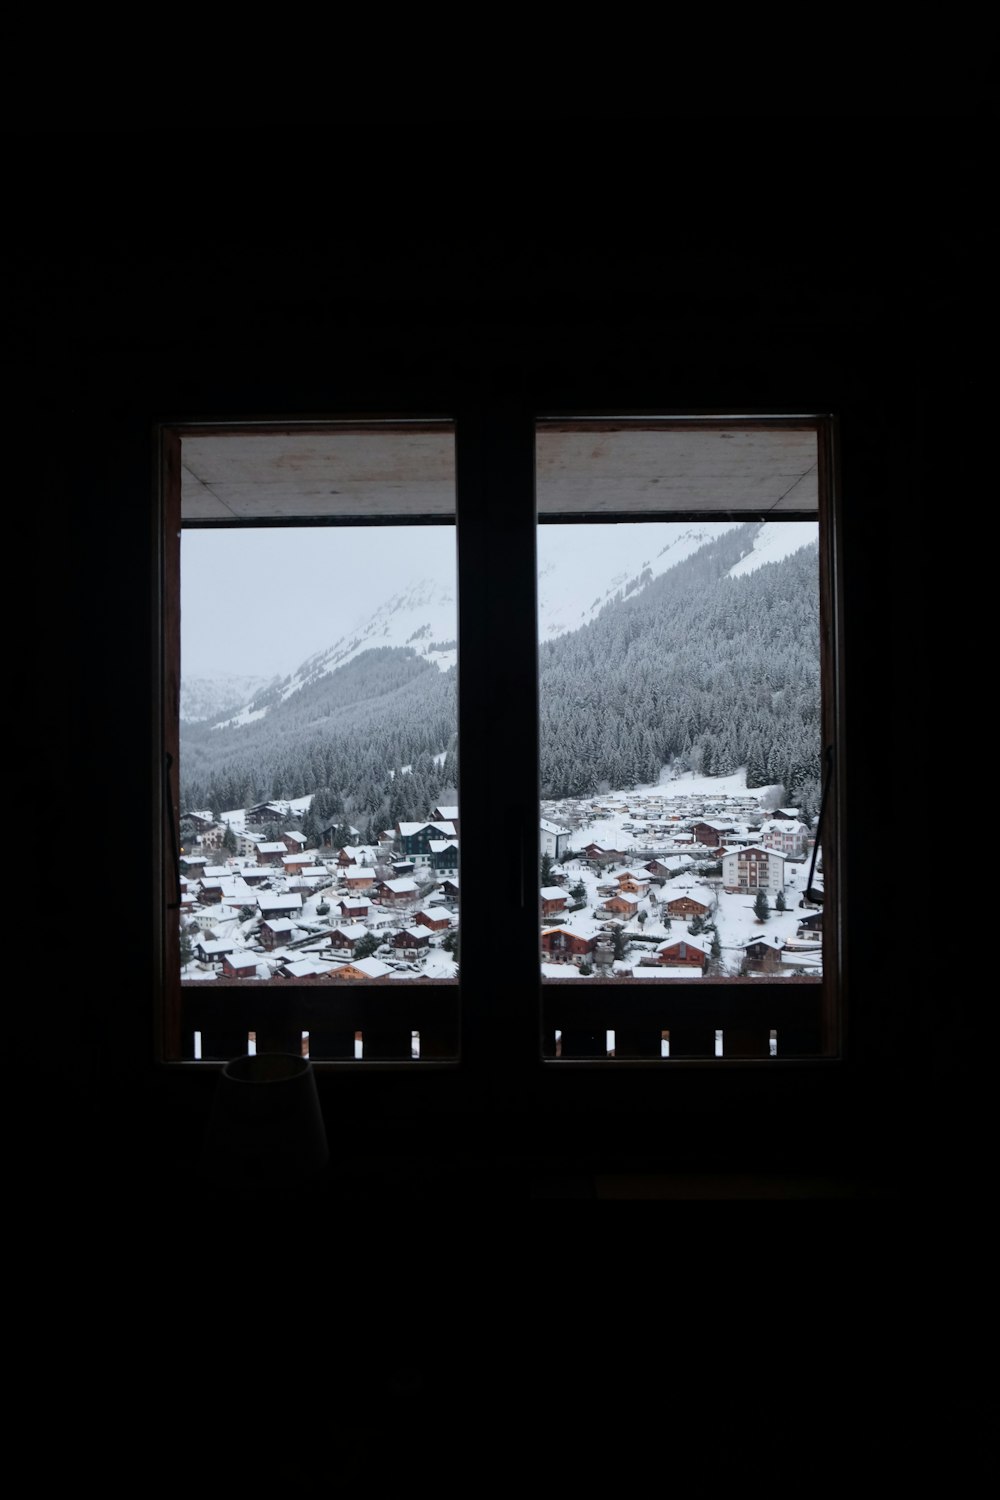 Una vista por la ventana de una ciudad nevada